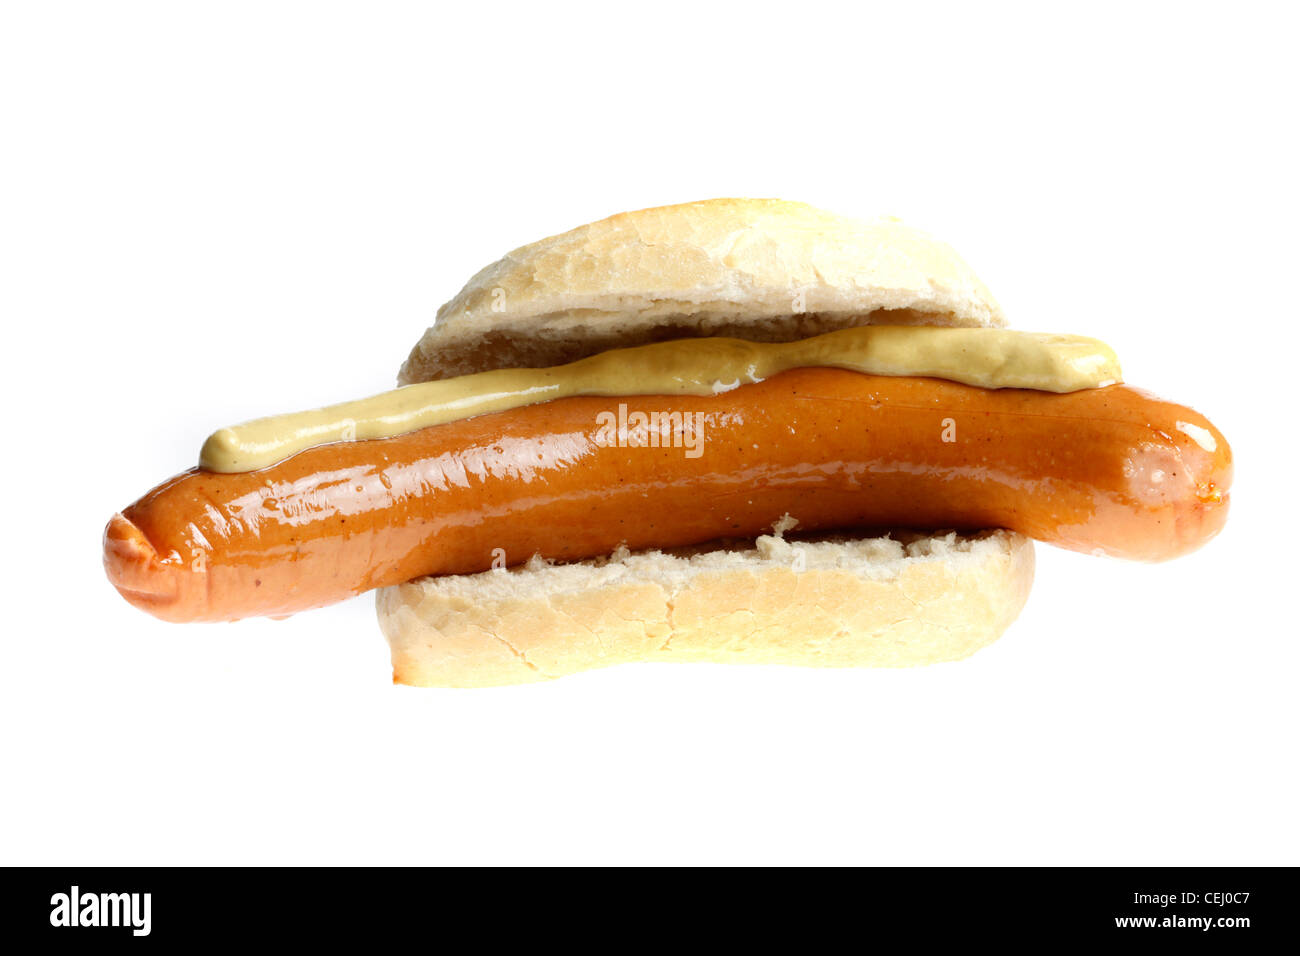 Ernährung, Fast-Food. Bockwurst, Würstchen, Frankfurter Stil gedämpft. Mit Senf. Hergestellt aus verschiedenen Arten von Fleisch. Stockfoto